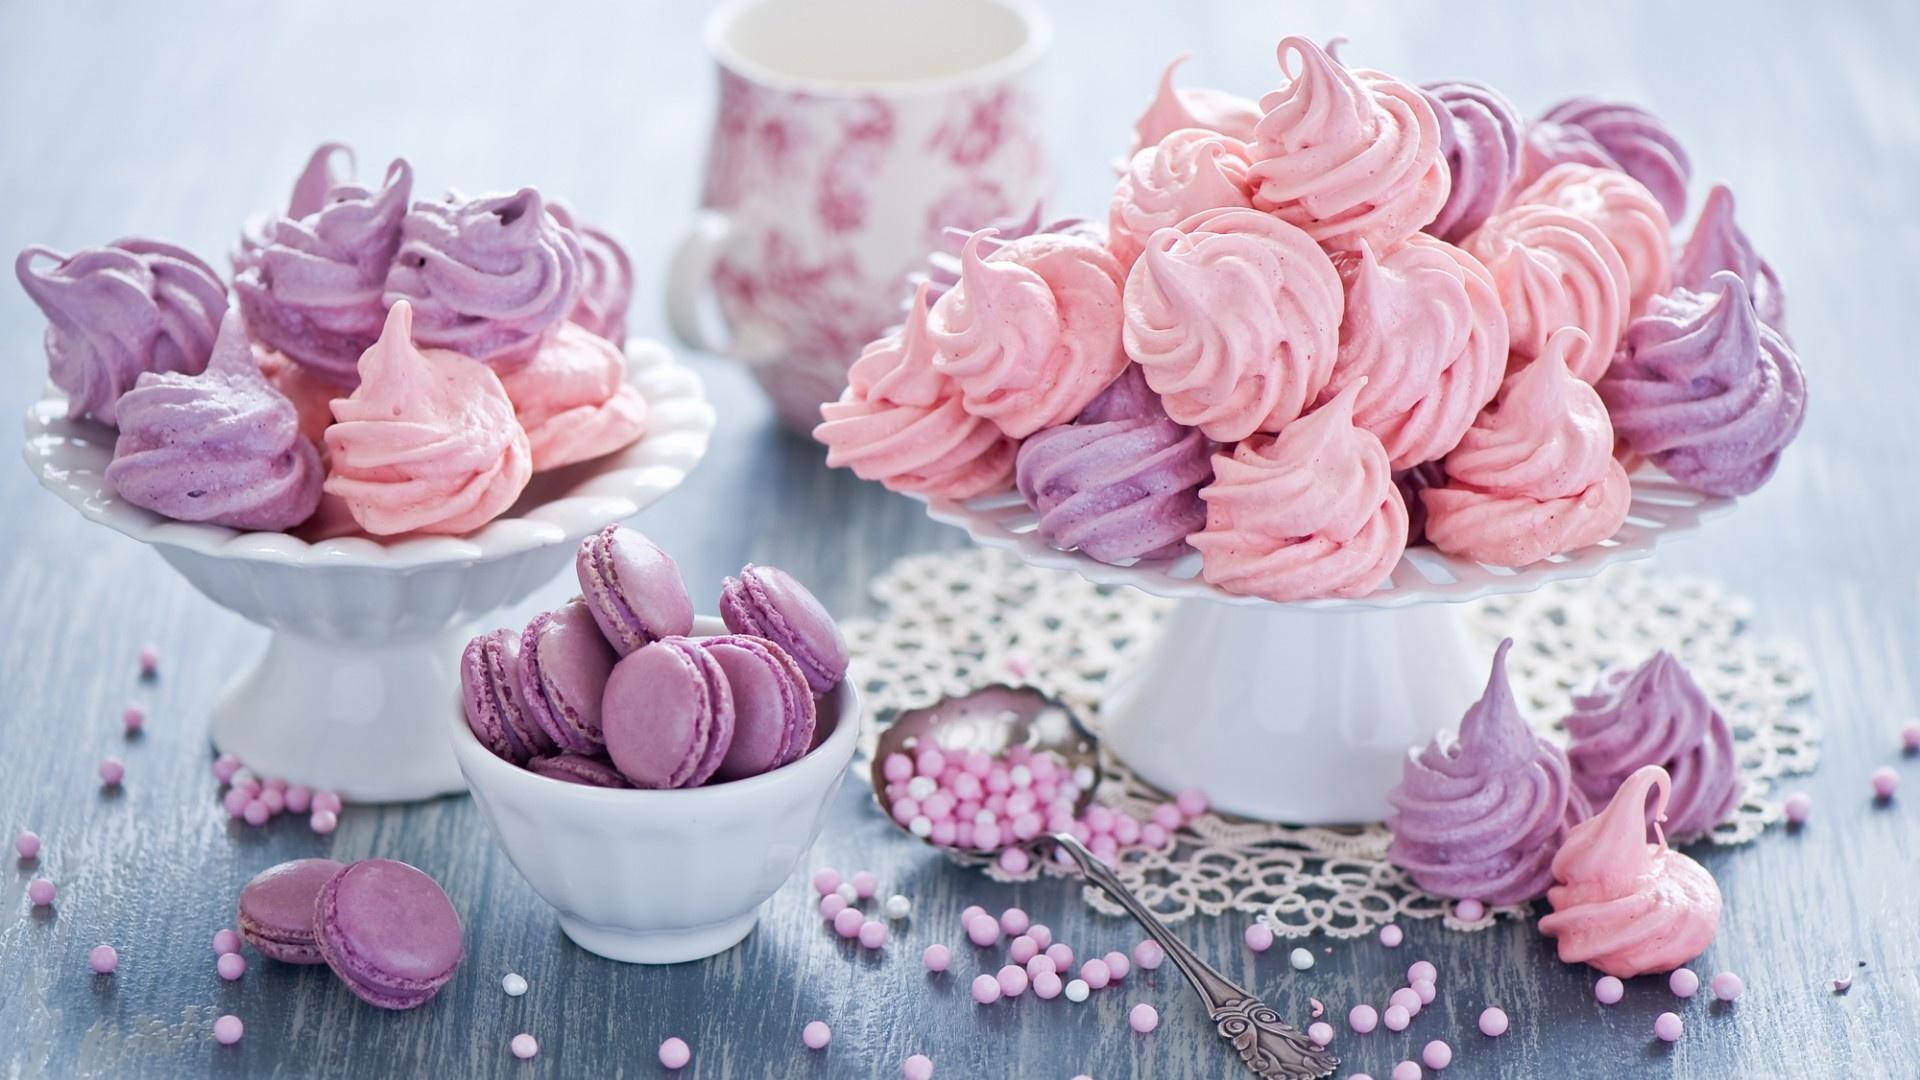 Cute Purple And Pink Meringue Cookies